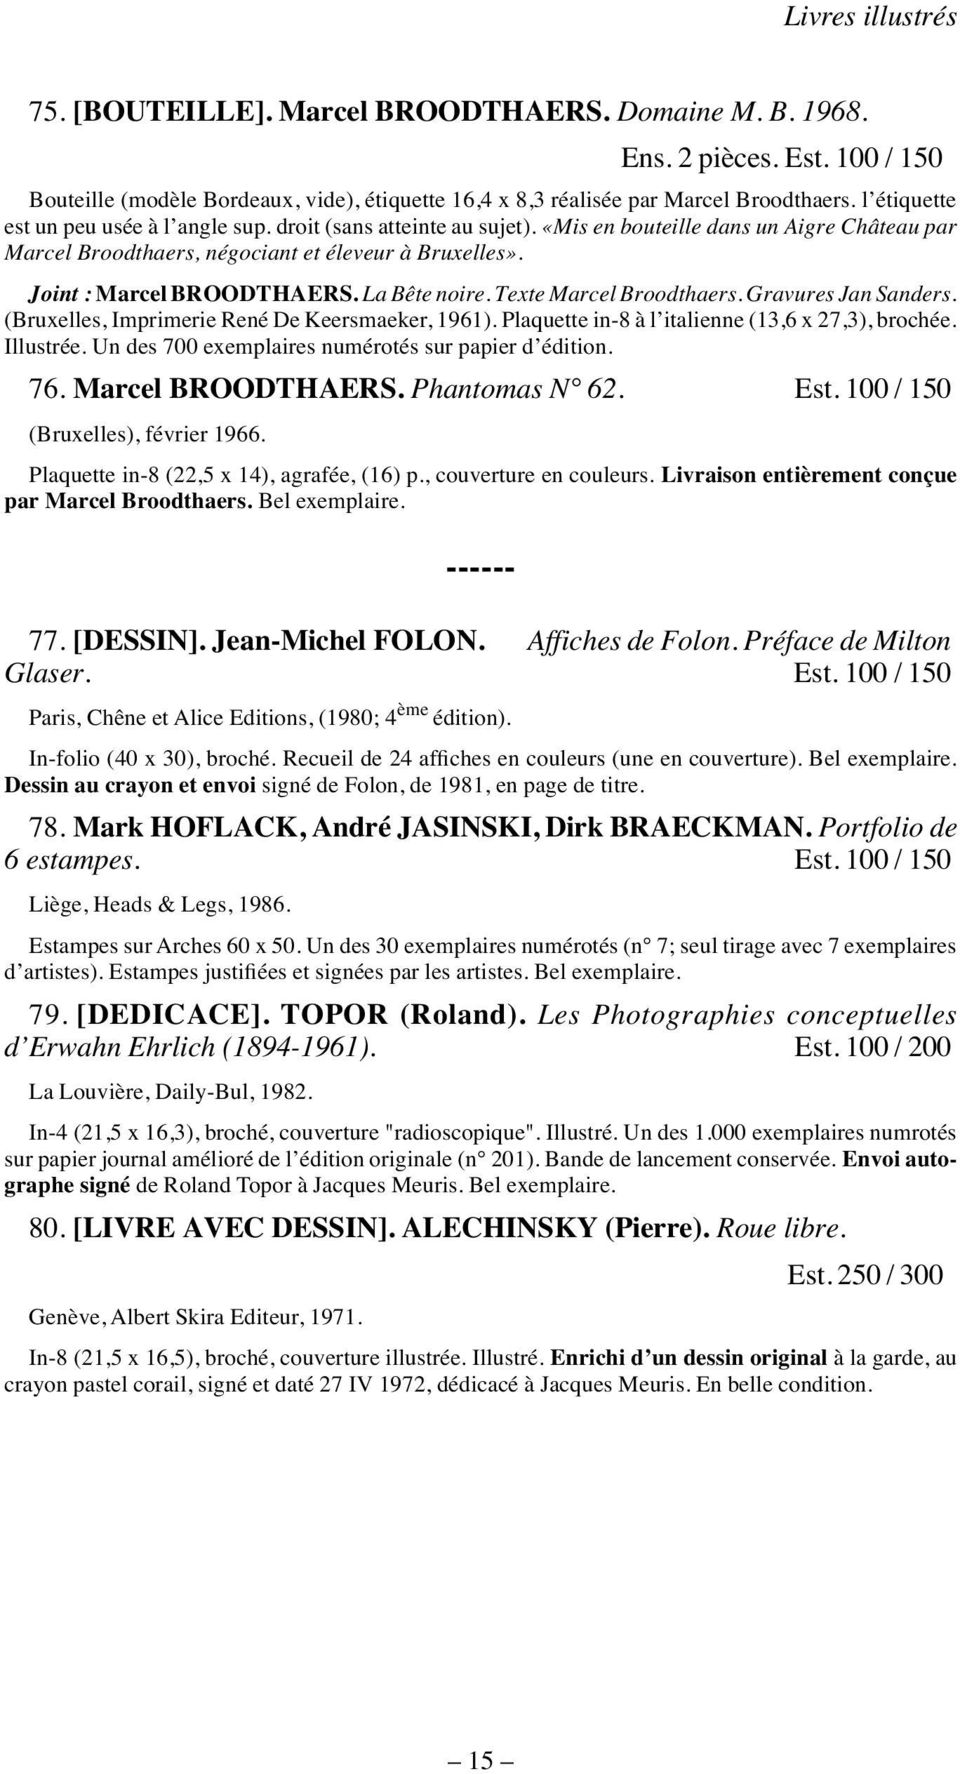 Joint : Marcel BROODTHAERS. La Bête noire. Texte Marcel Broodthaers. Gravures Jan Sanders. (Bruxelles, Imprimerie René De Keersmaeker, 1961). Plaquette in-8 à l italienne (13,6 x 27,3), brochée.